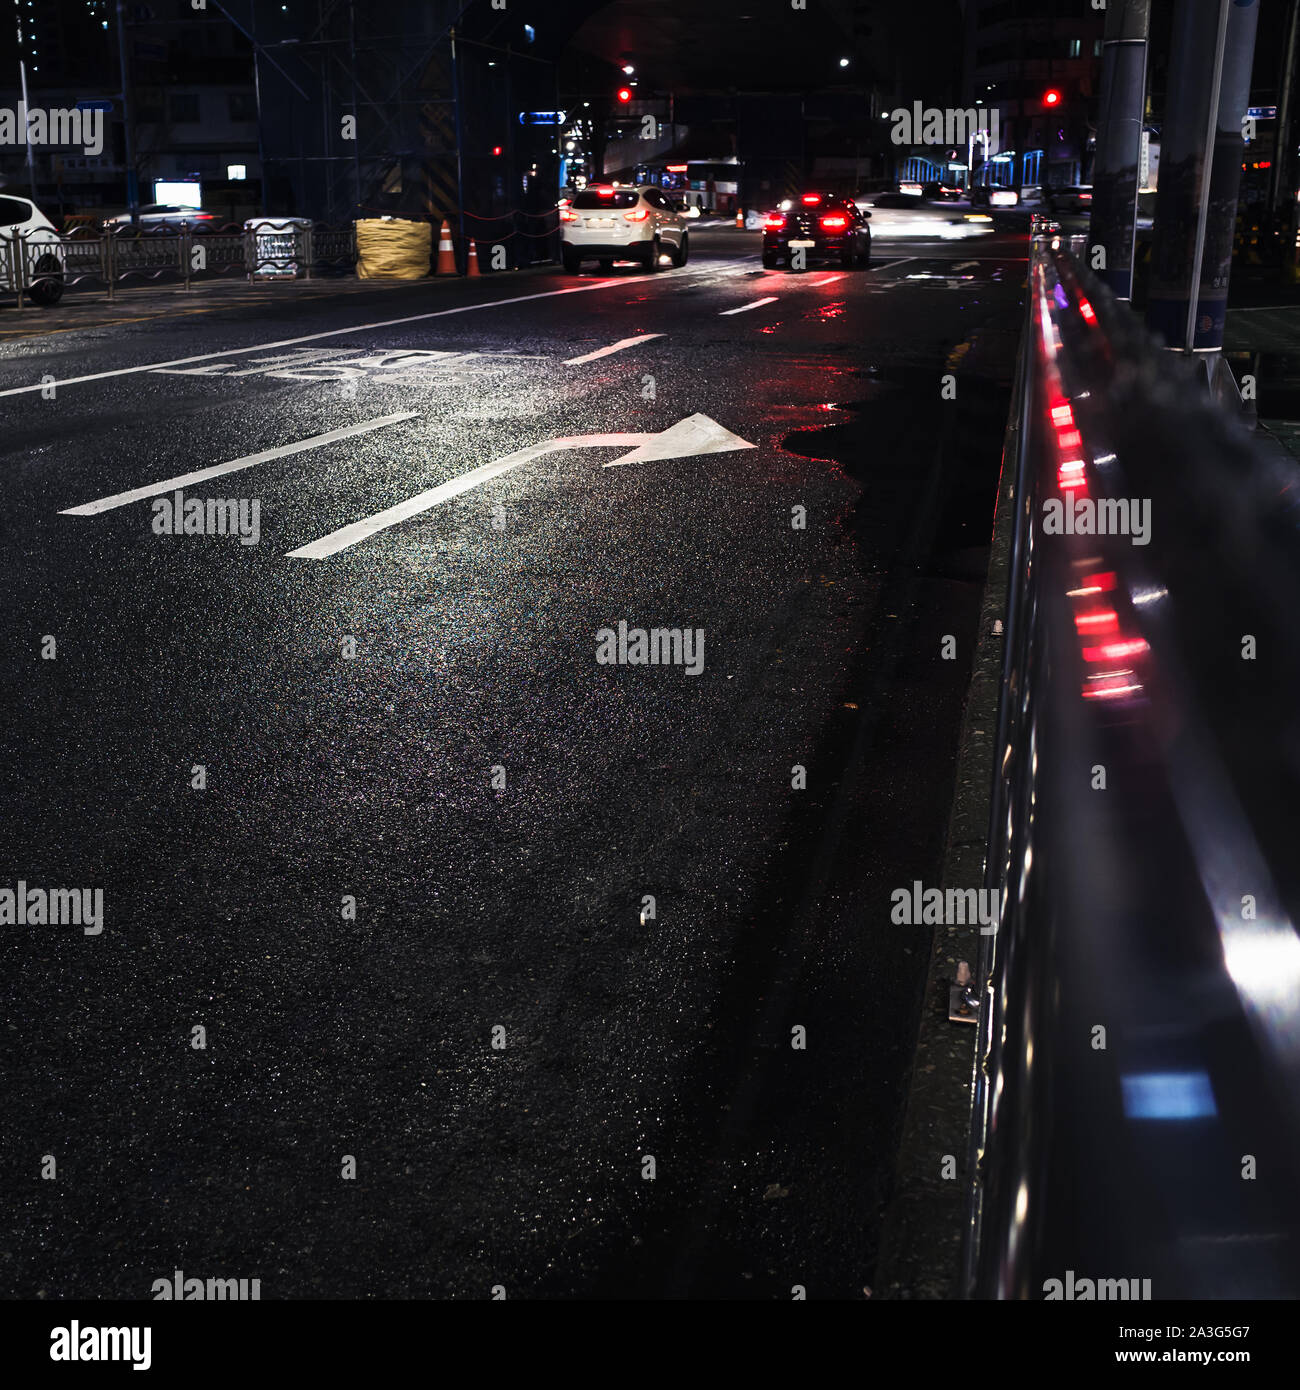 Piazza notte urbana foto con la segnaletica stradale le frecce e le luci rosse. Abstract di notte sullo sfondo della città Foto Stock